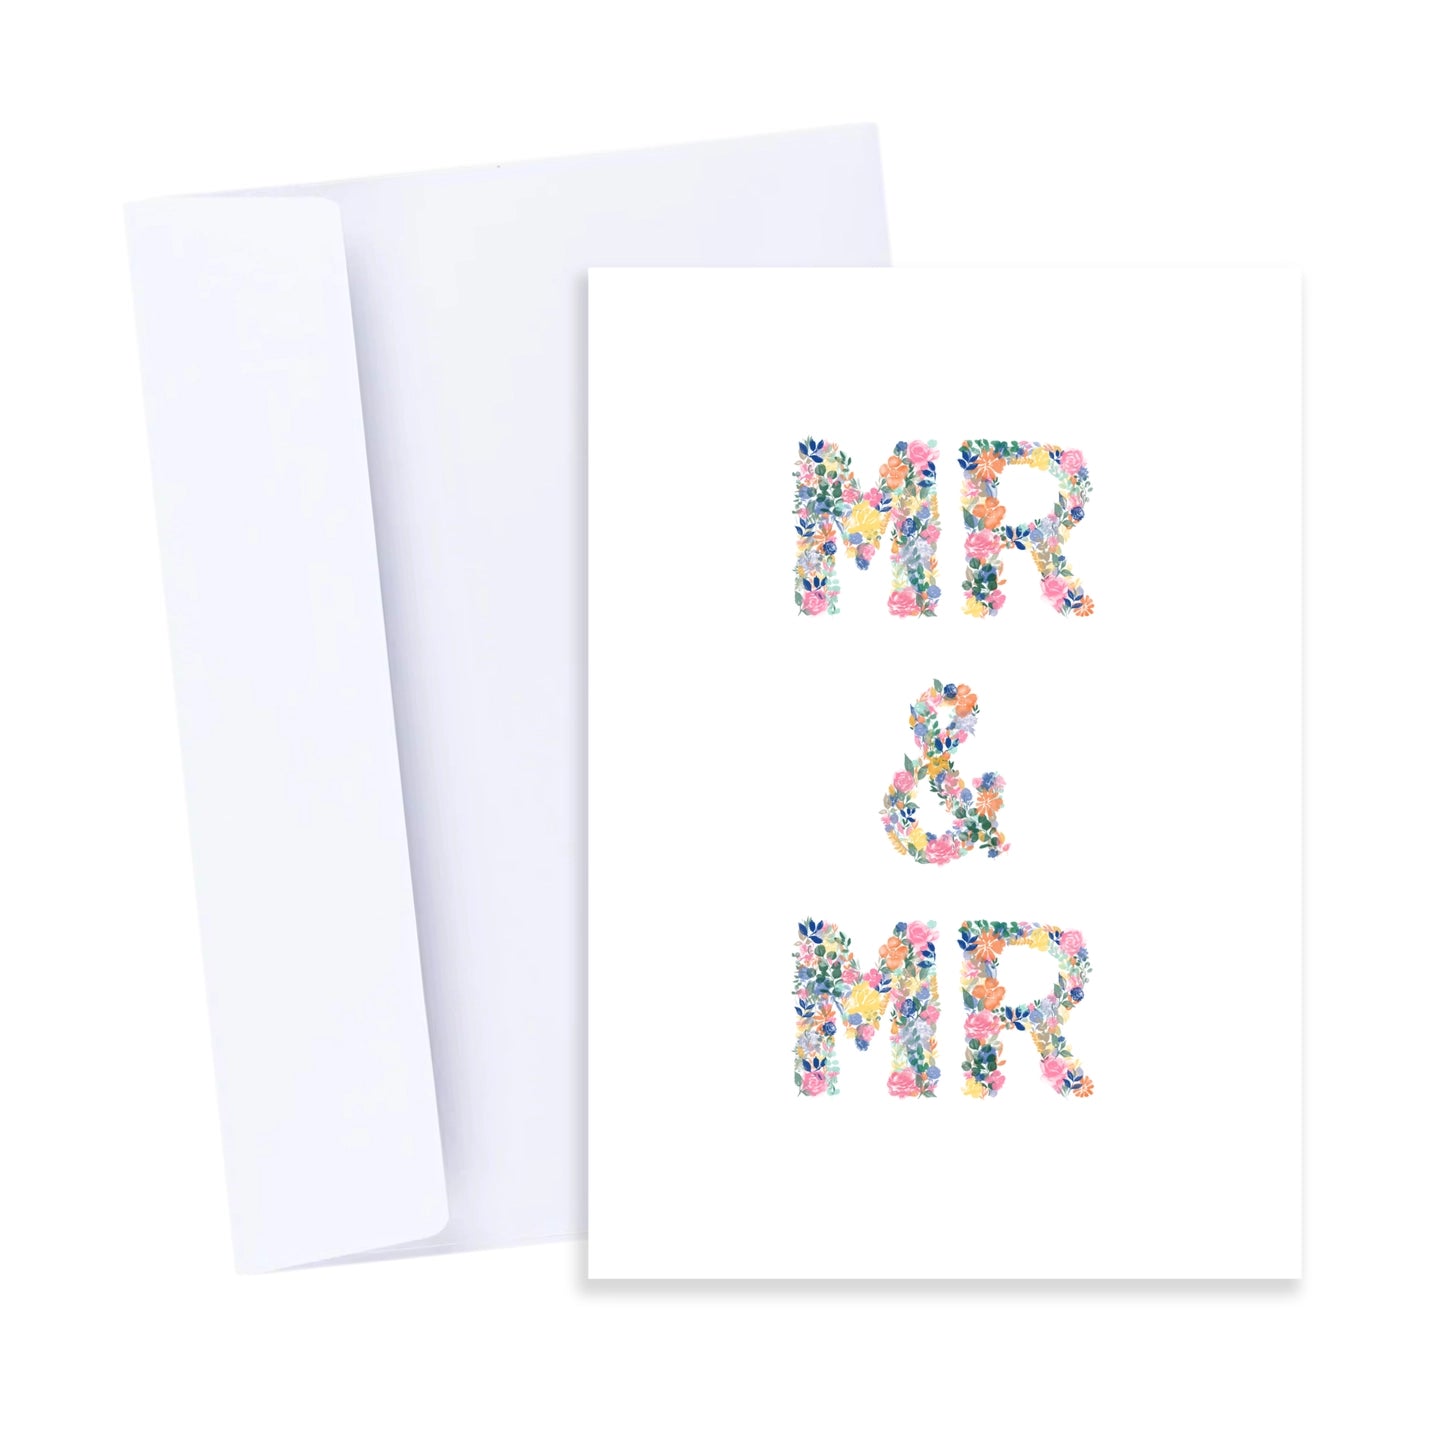 Mr & Mr Card